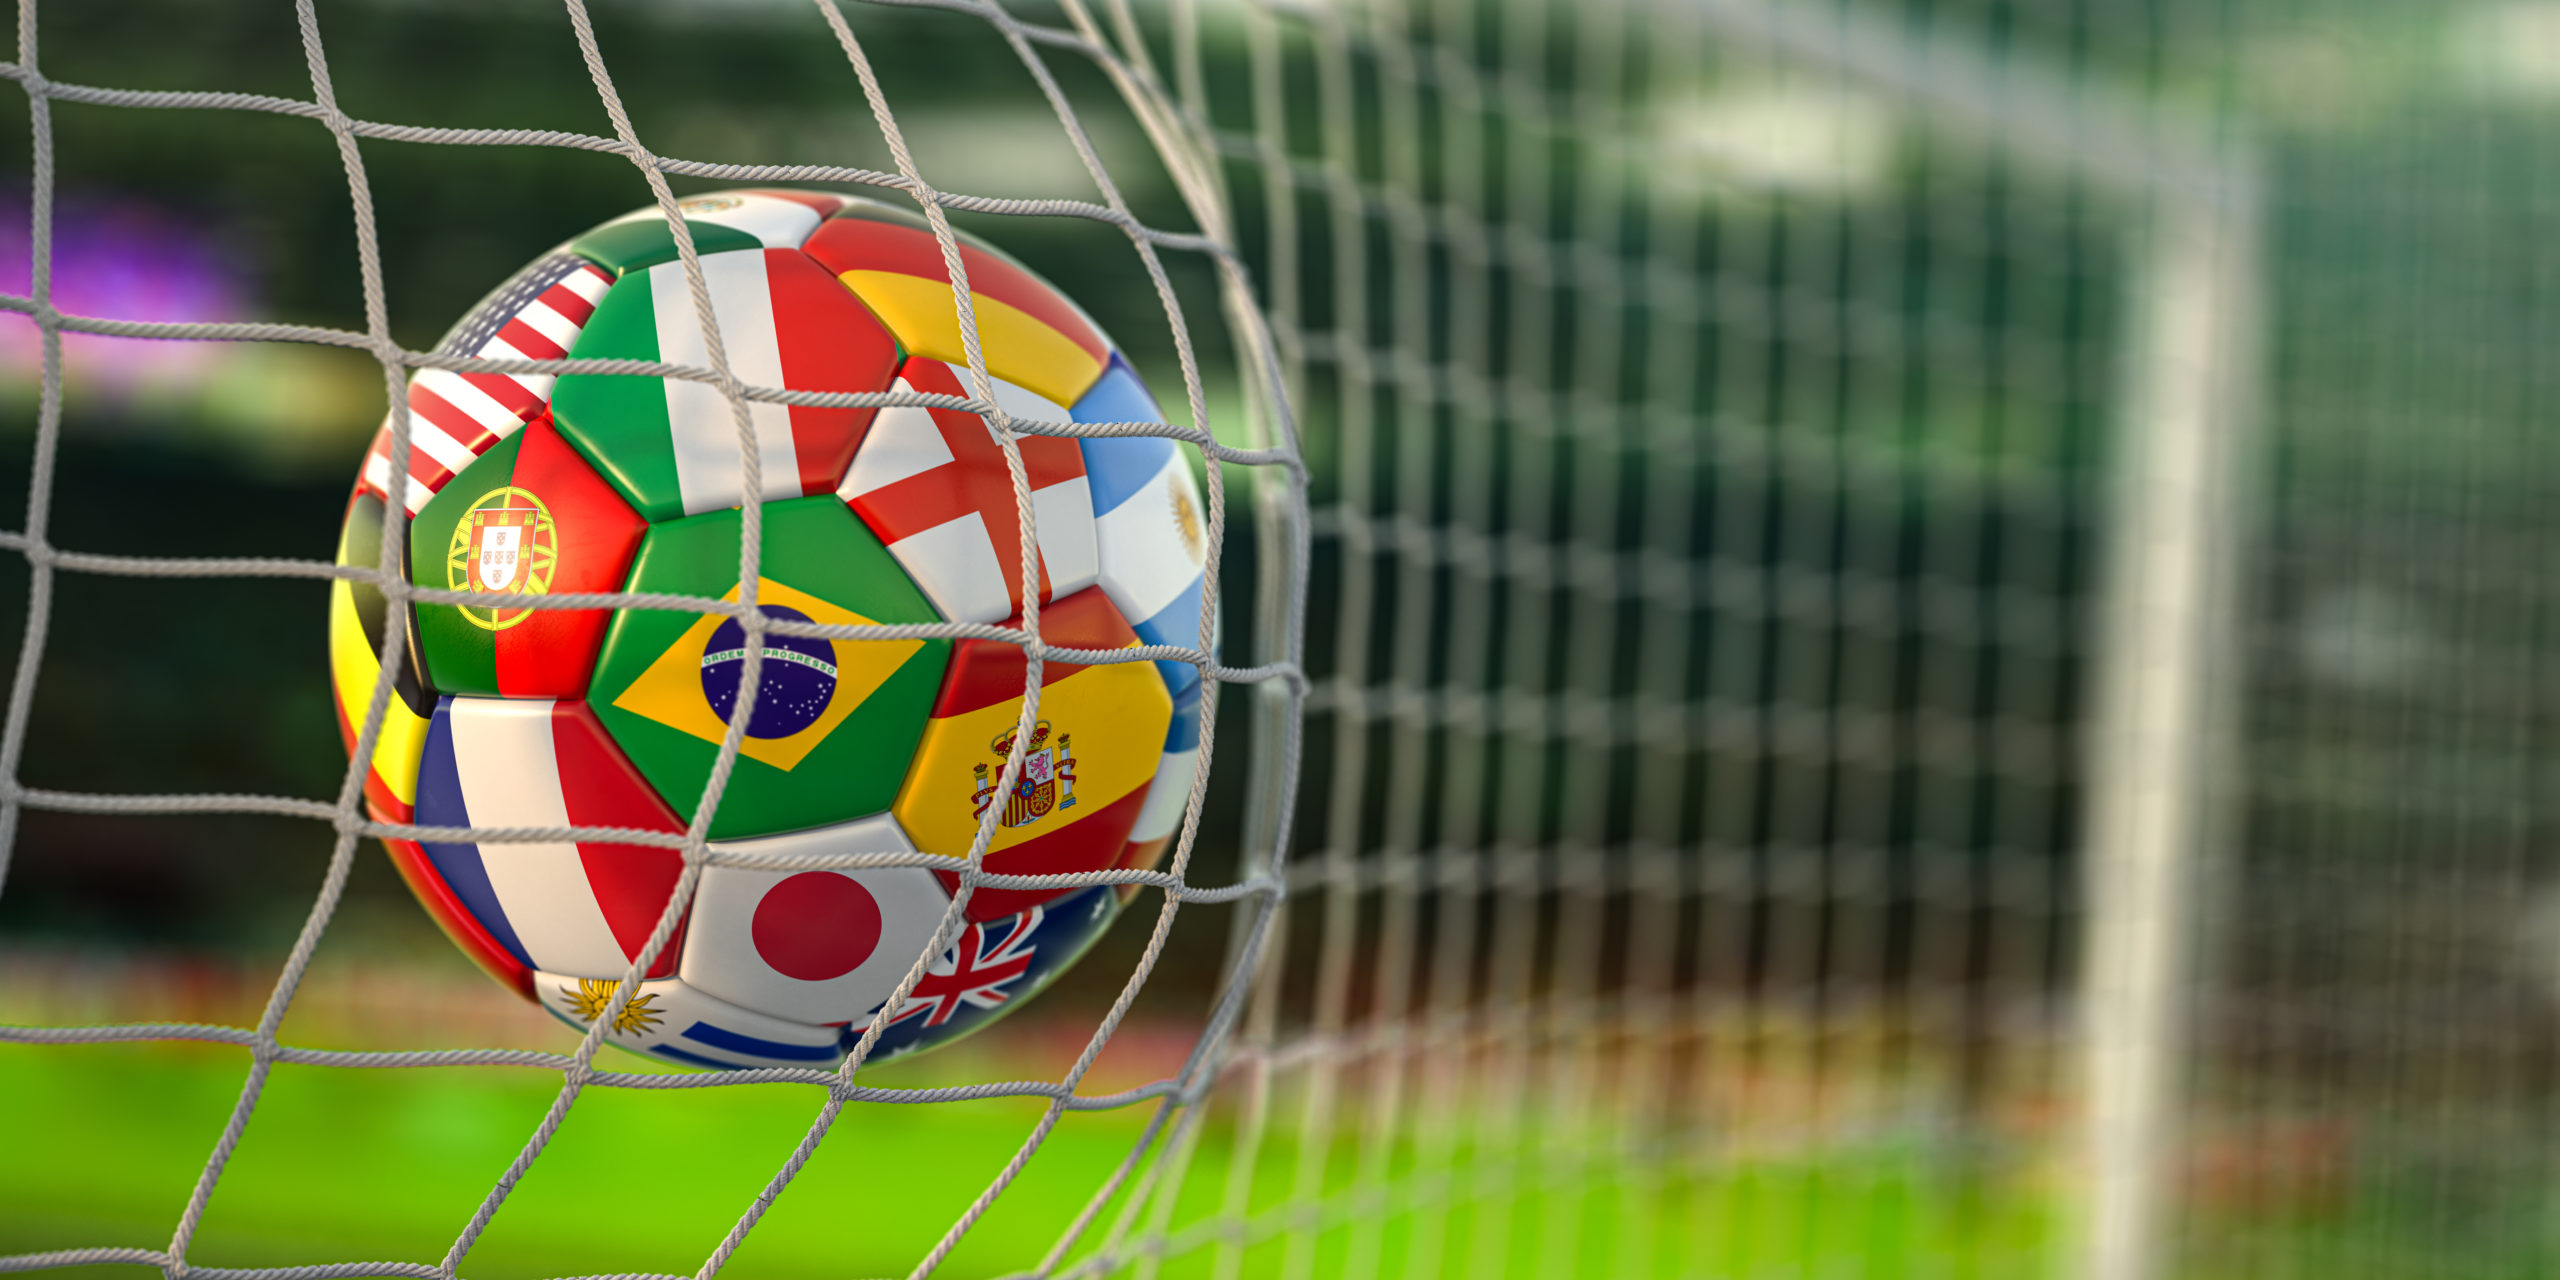 bola de futebol estampada com várias bandeiras de seleções (Brasil, Espanha, Argentina, etc) tocando a rede do gol